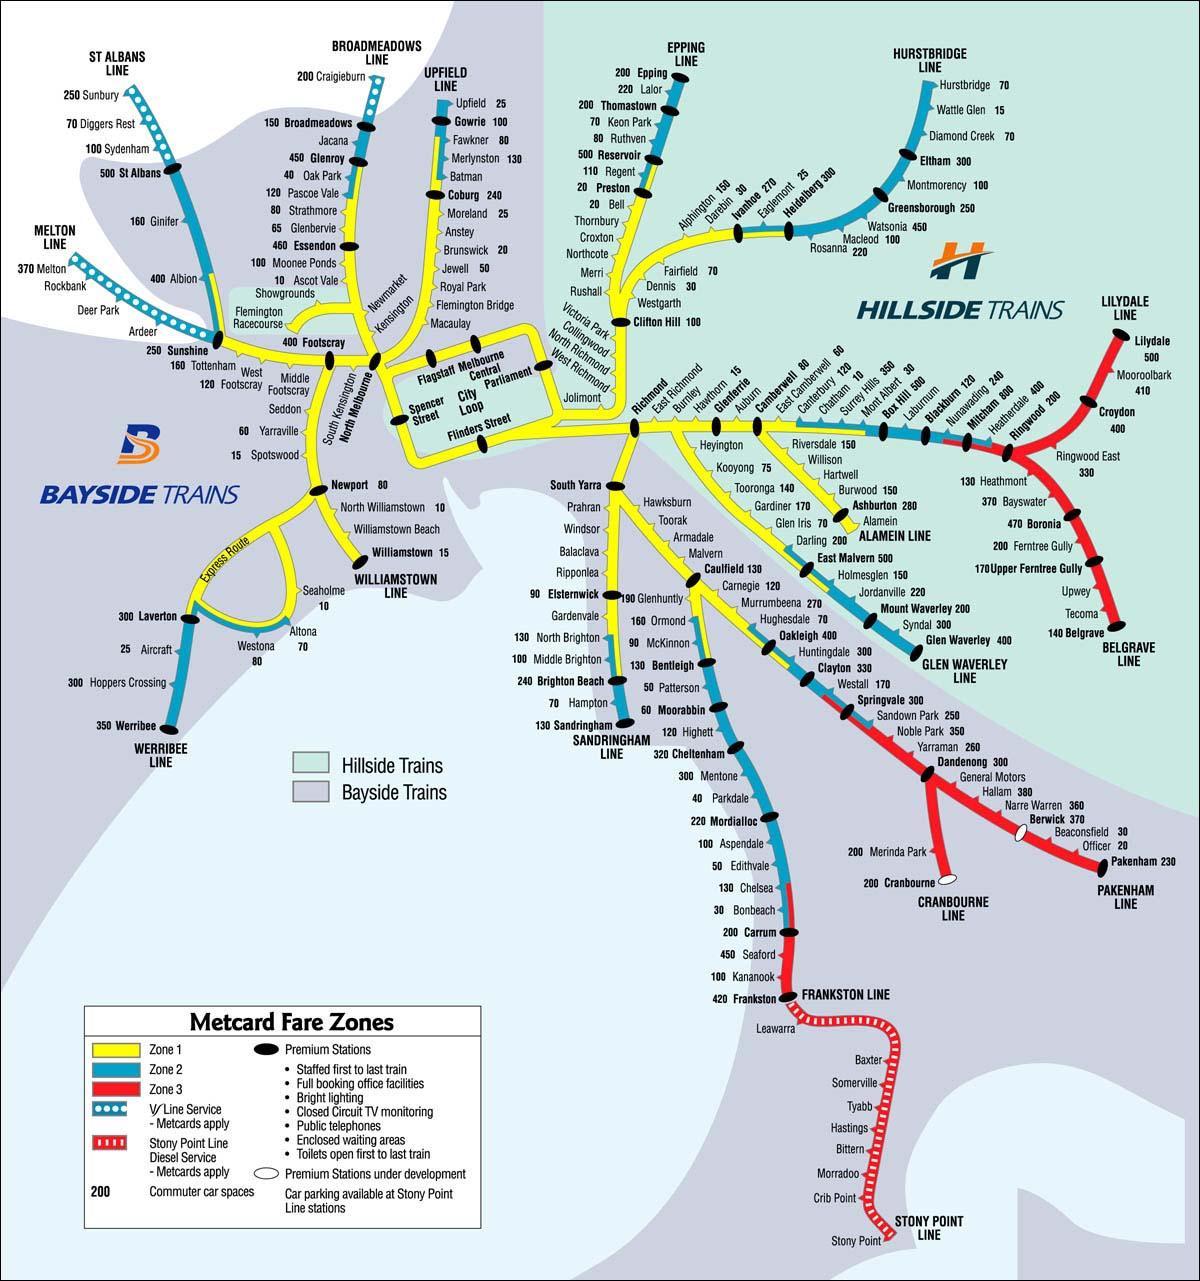 Melburnas dzelzceļa stacija map